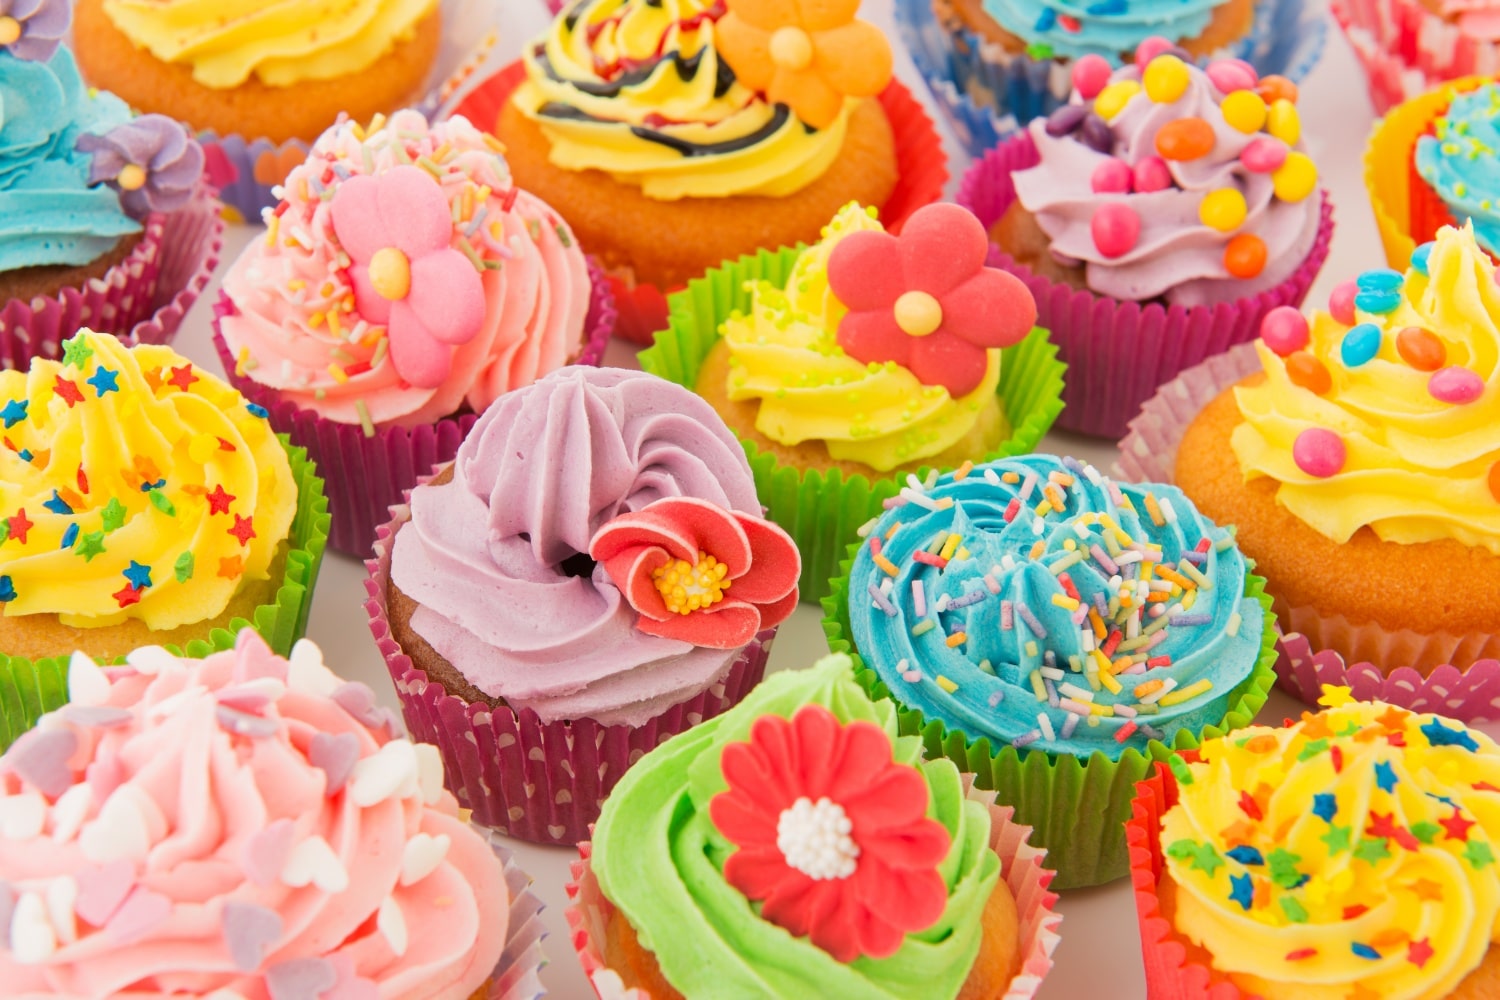 Színes, habos süticsodák: így készül a hamisítatlan amerikai cupcake